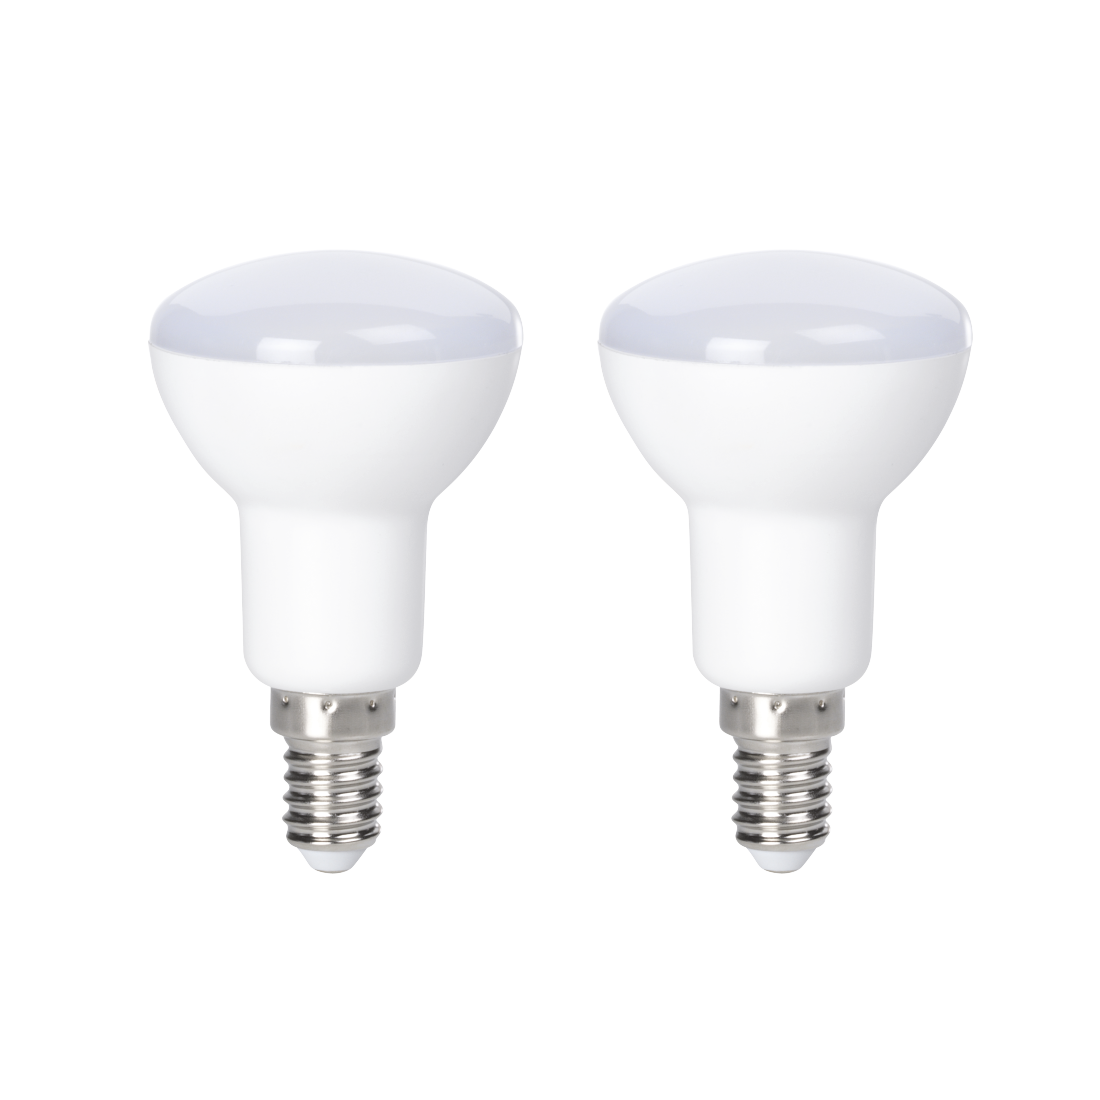 abx Druckfähige Abbildung - Xavax, LED-Lampe, E14, 470lm ersetzt 40W, Reflektorlampe R50, Warmweiß, 2 Stück